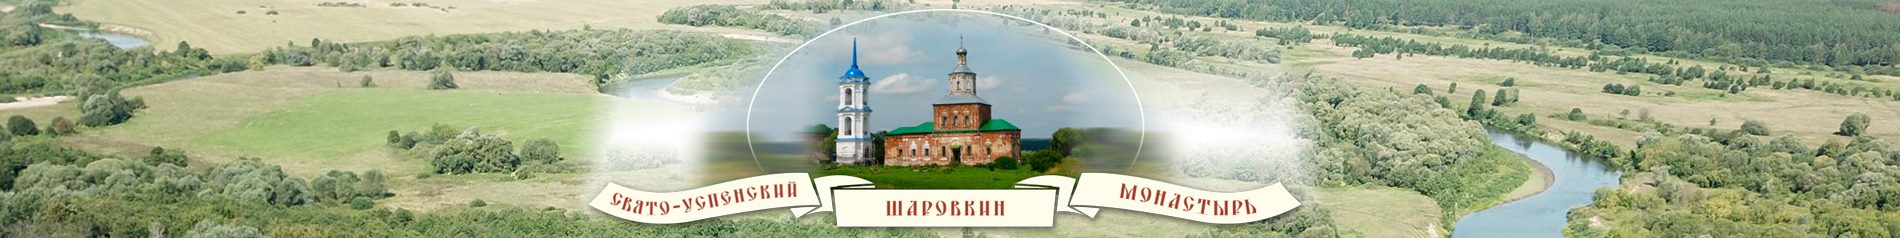 Свято-Успенский Шаровкин монастырь